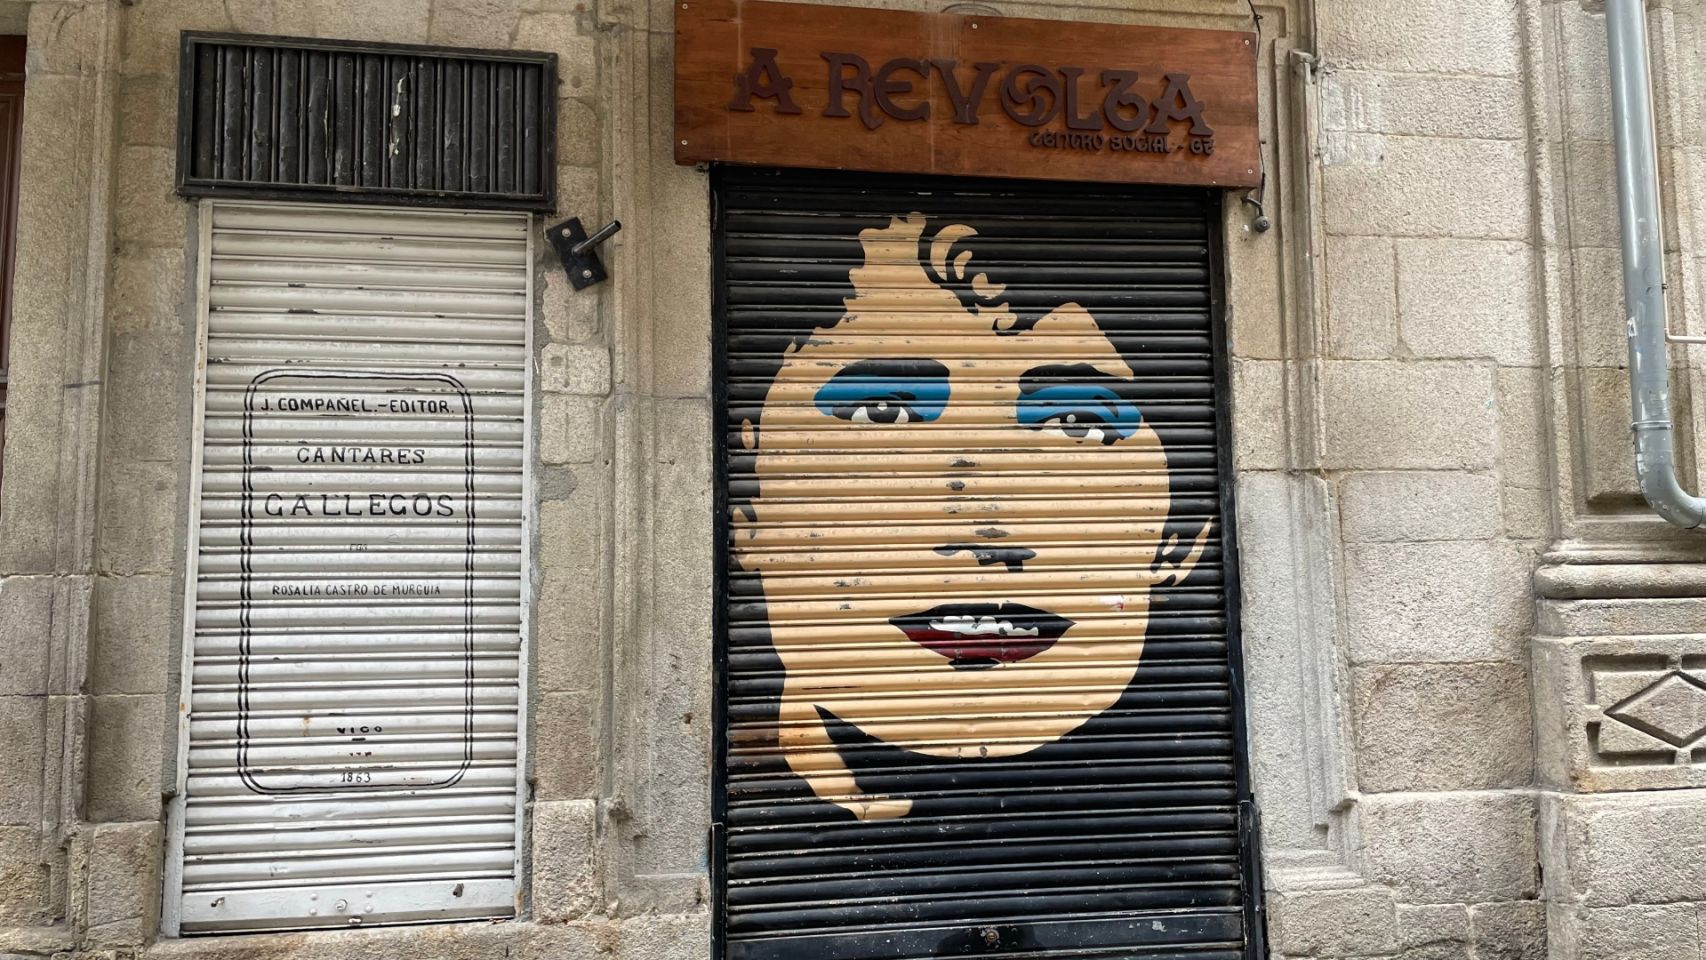 Referencias a Rosalía de Castro y su obra en dos portales de la calle Real.